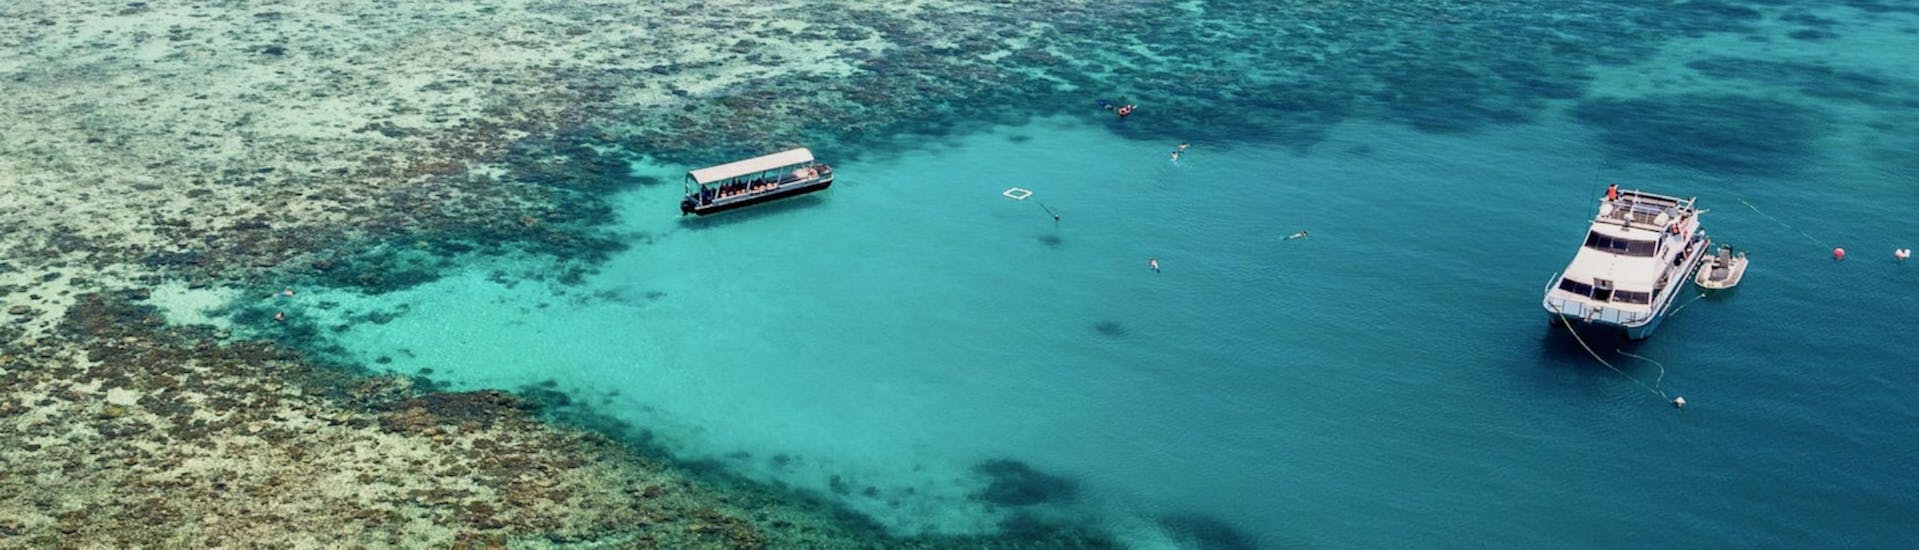 Boottocht naar Great Barrier Reef met zwemmen & wild spotten.